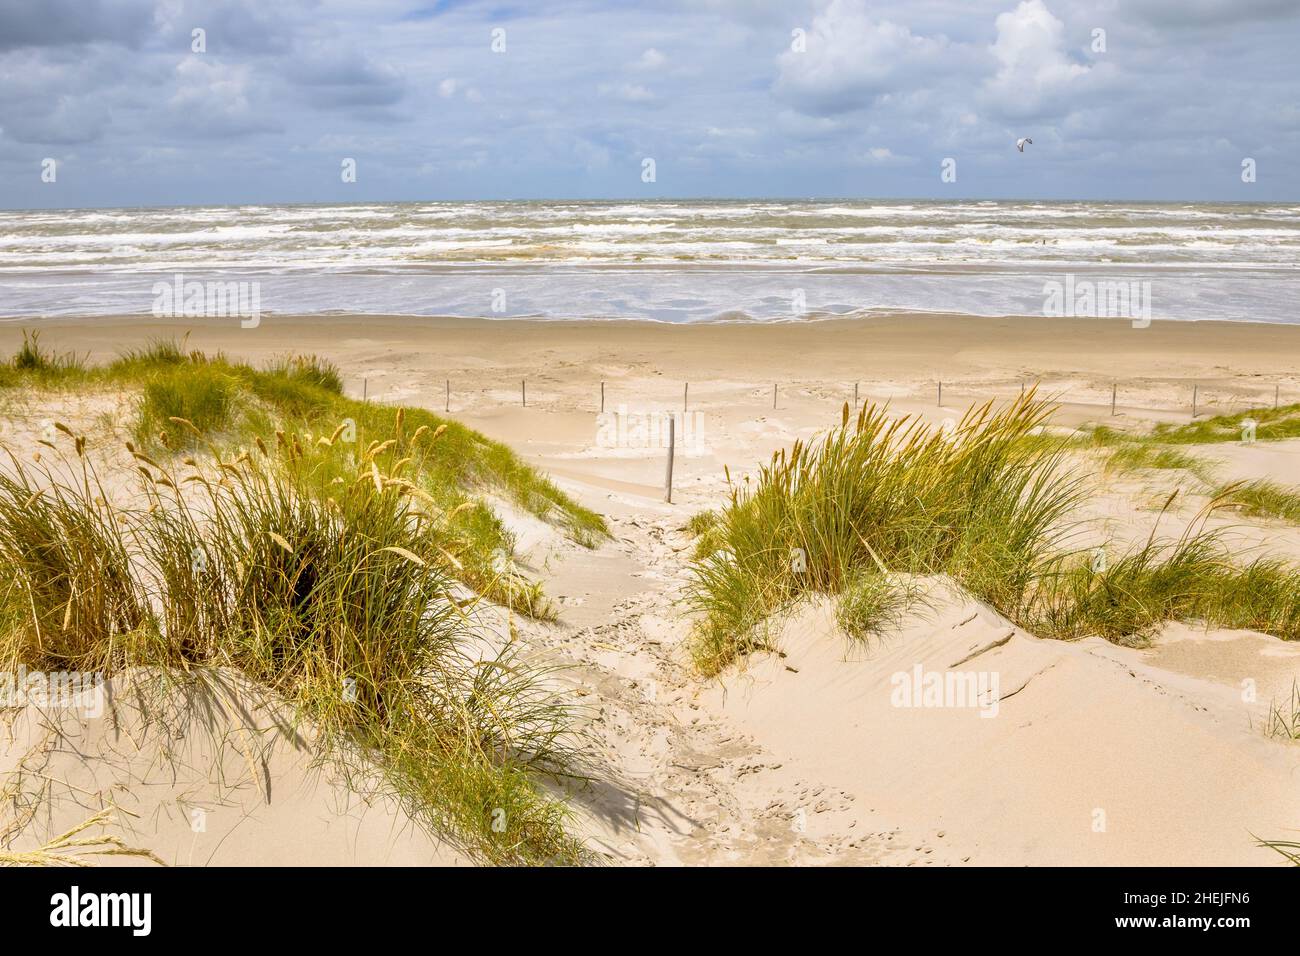 Landschaftsansicht der Sanddüne an der Nordseeküste bei Wijk aan Zee, Noord Holland Provinz, Niederlande. Landschaft Szene der europäischen Natur. Stockfoto